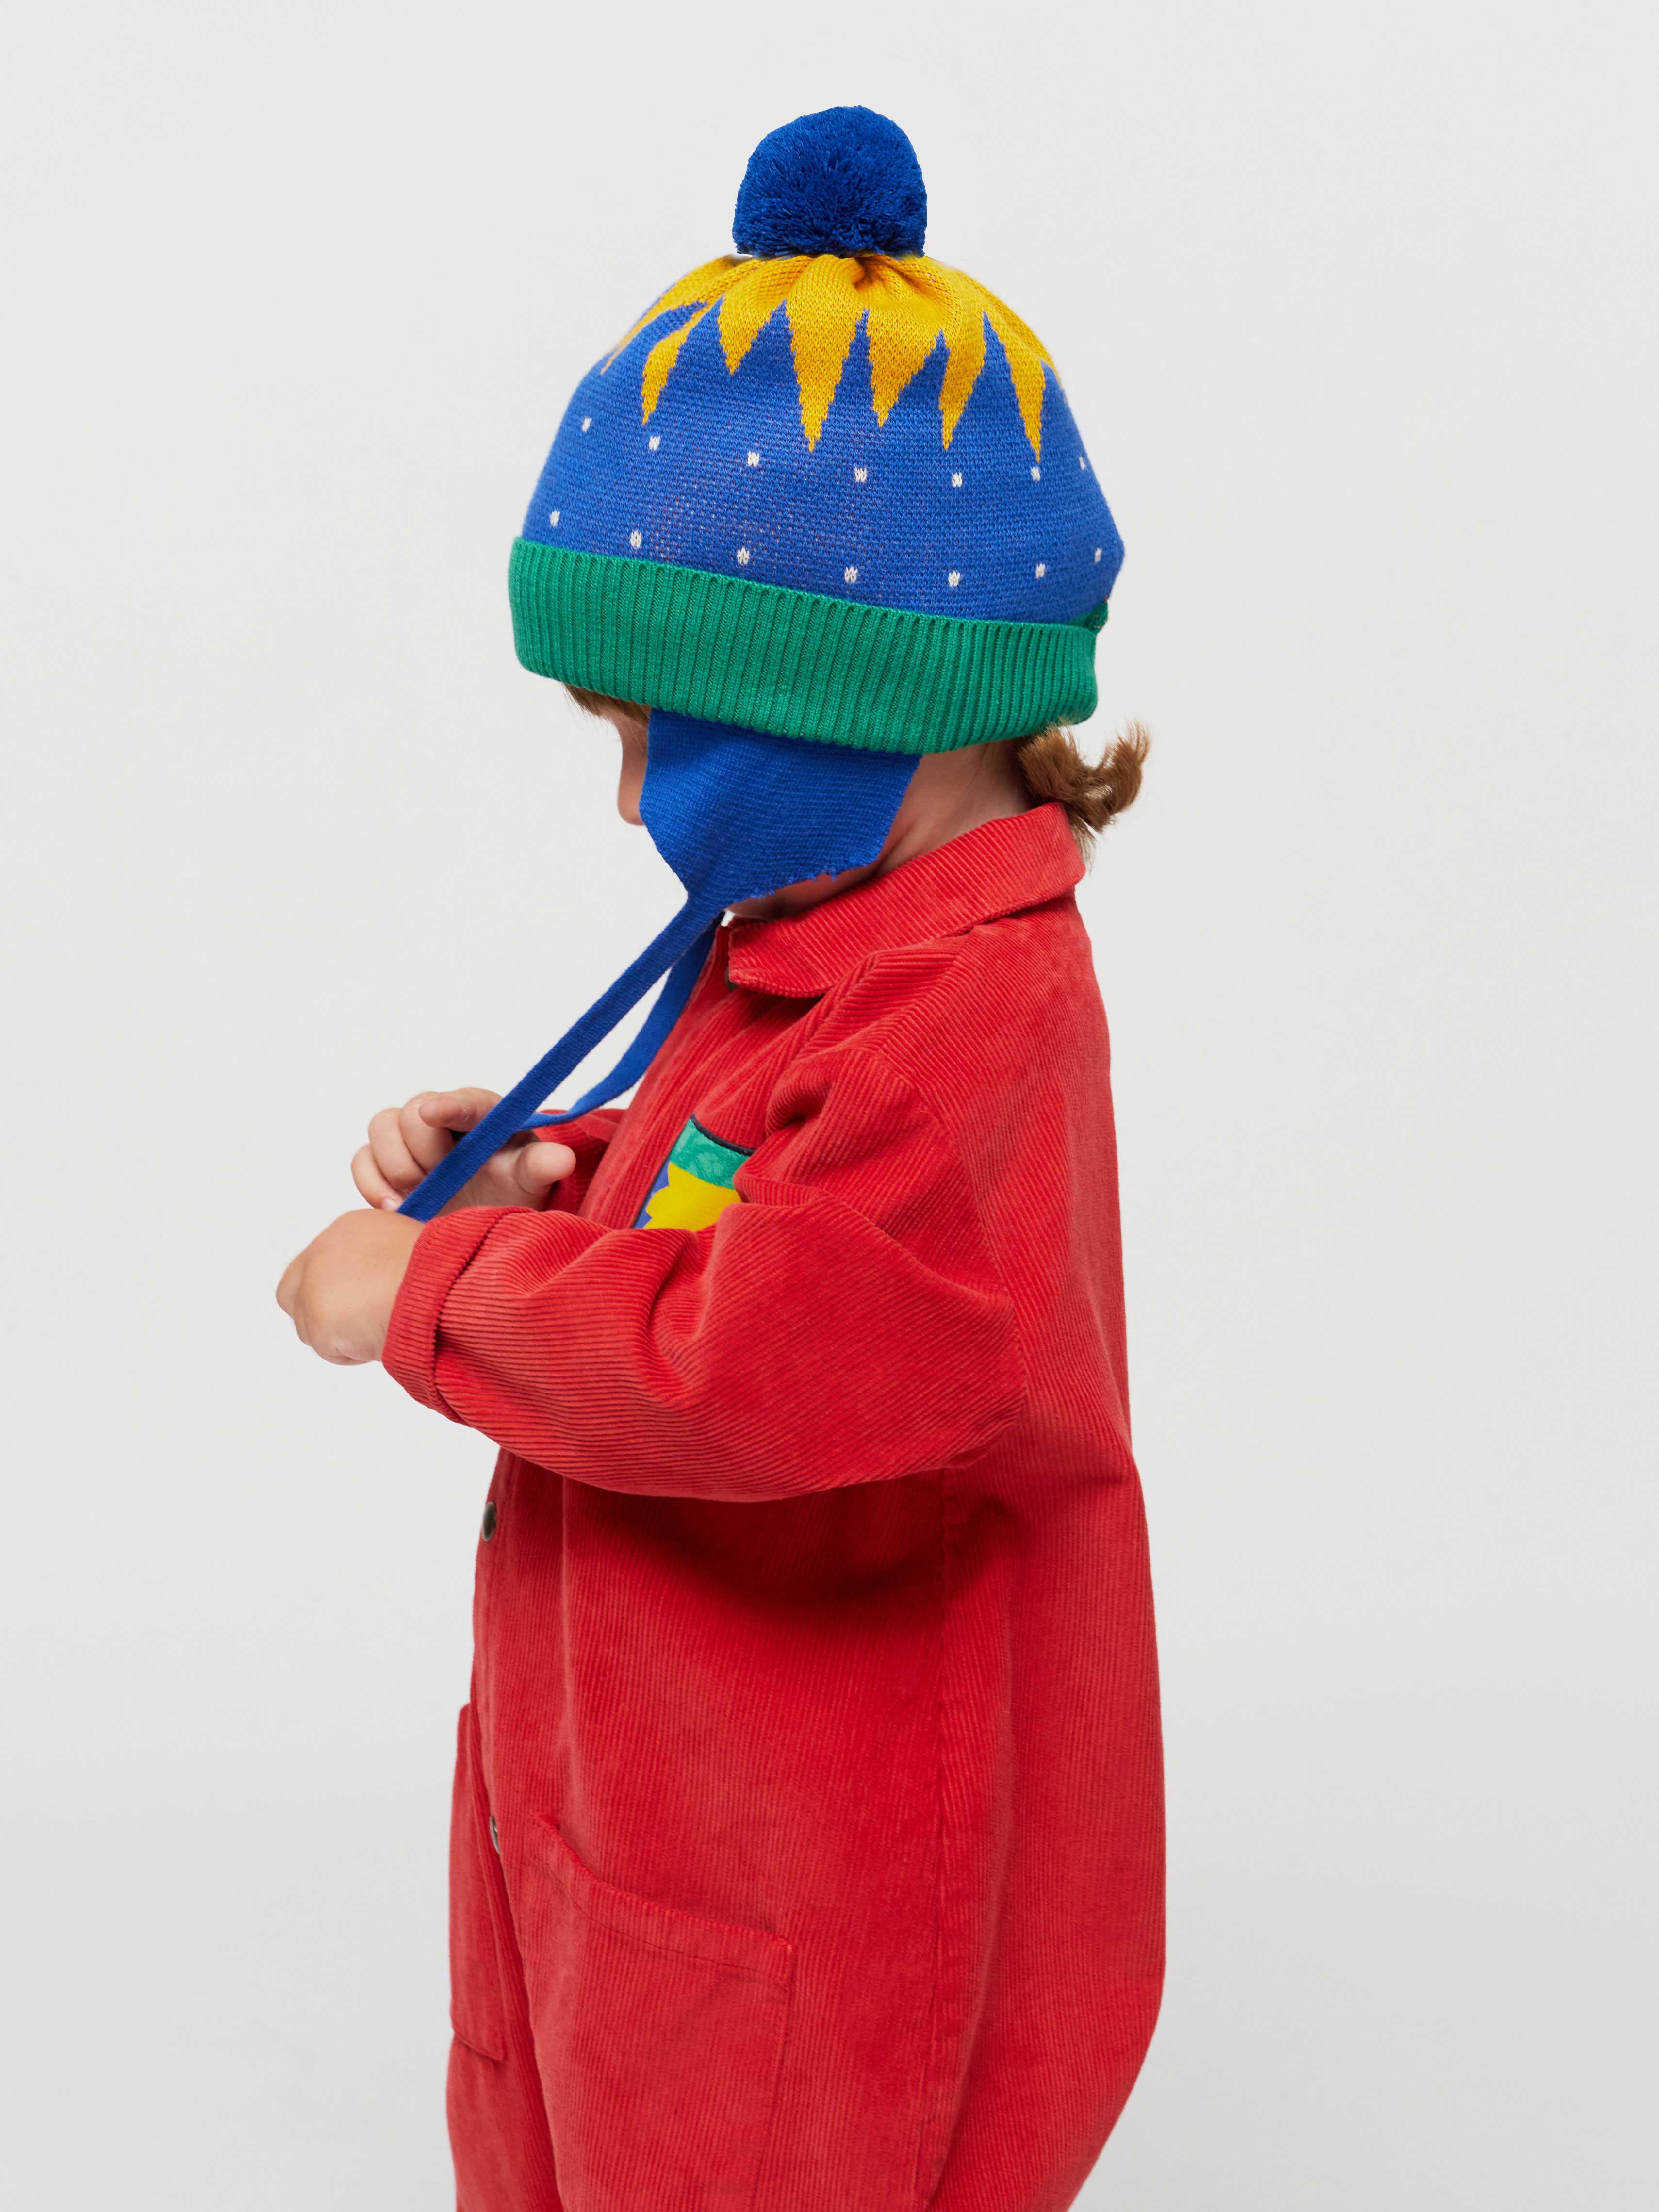 ATLANTIS AT233 - Bonnet en coton organique enfant – BABYKIDSZ